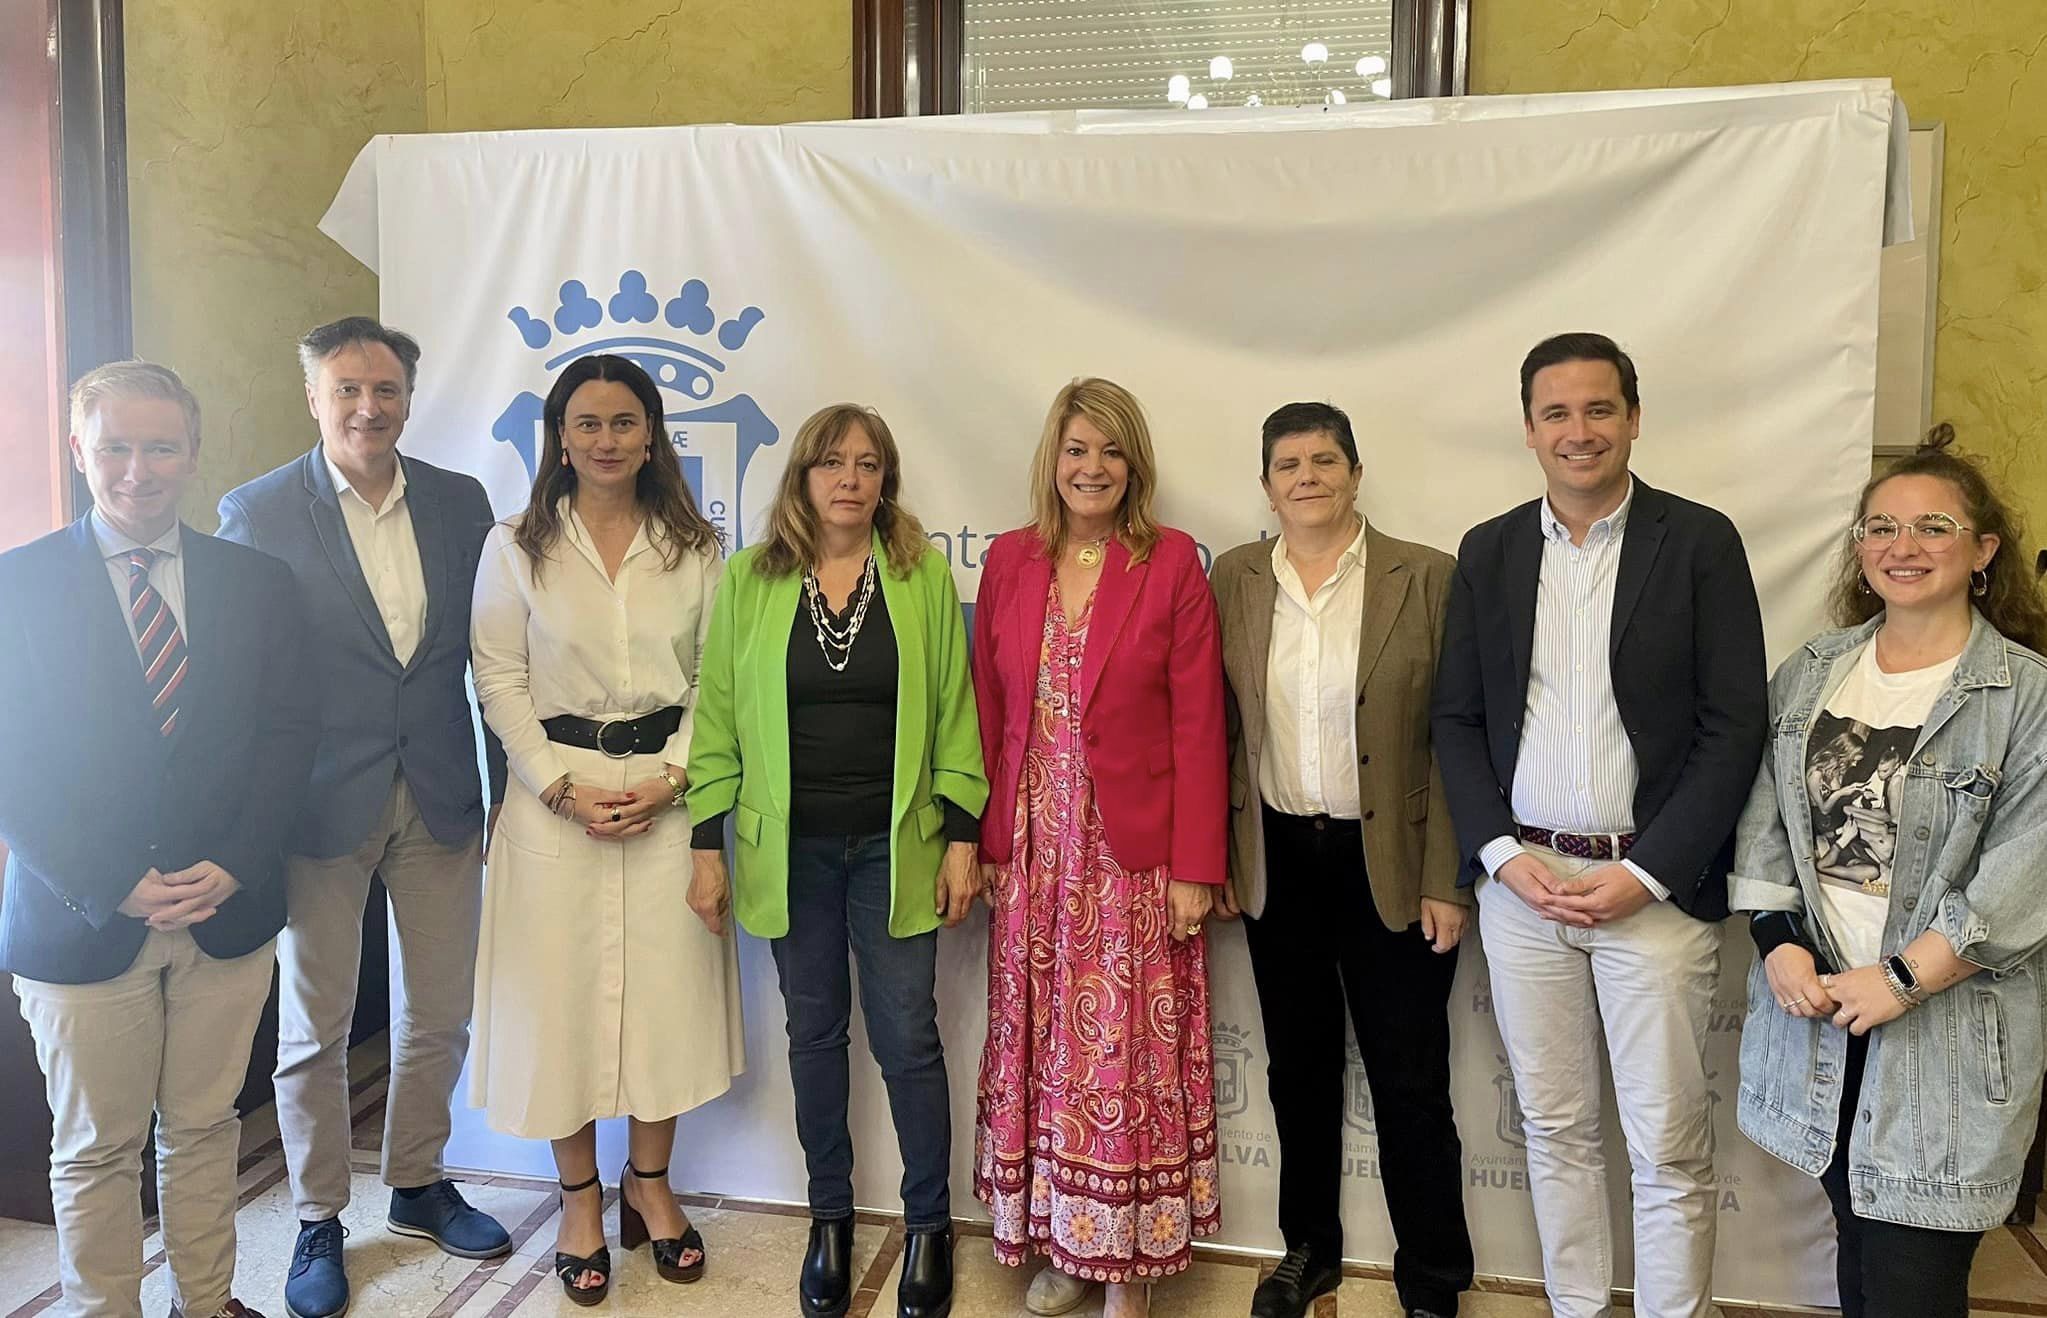 Miembros de la nueva Junta Directiva de la APH con la alcaldesa de Huelva y ediles de su equipo de gobierno